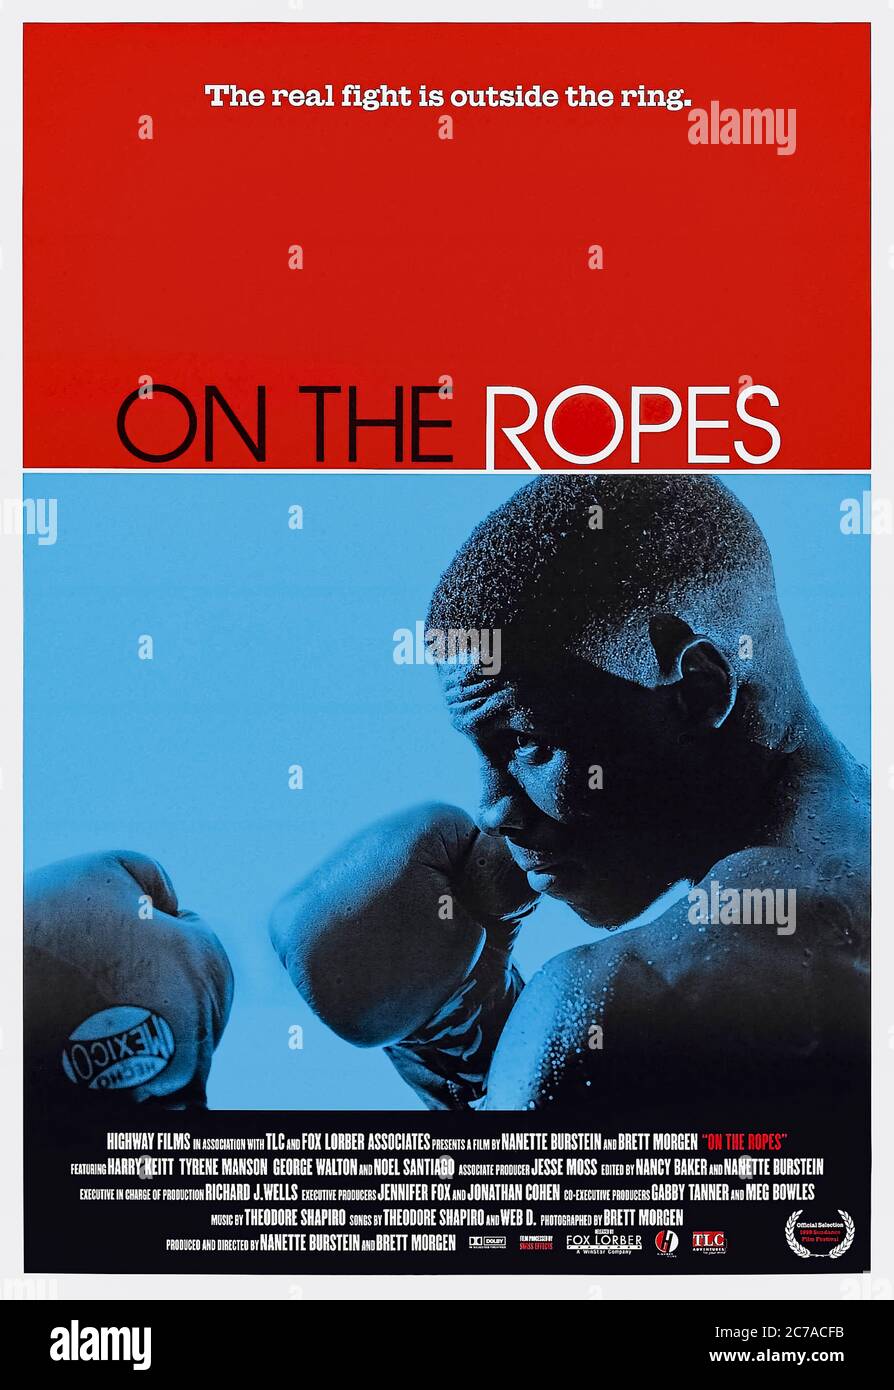 On the Sropes (1999) unter der Regie von Nanette Burstein und Brett Morgen mit Sam Doumit, Martin Goldman und Harry Keit. Dokumentarfilm nach Boxtrainer Harry Keit und 3 jungen Boxern im und aus dem Ring. Stockfoto